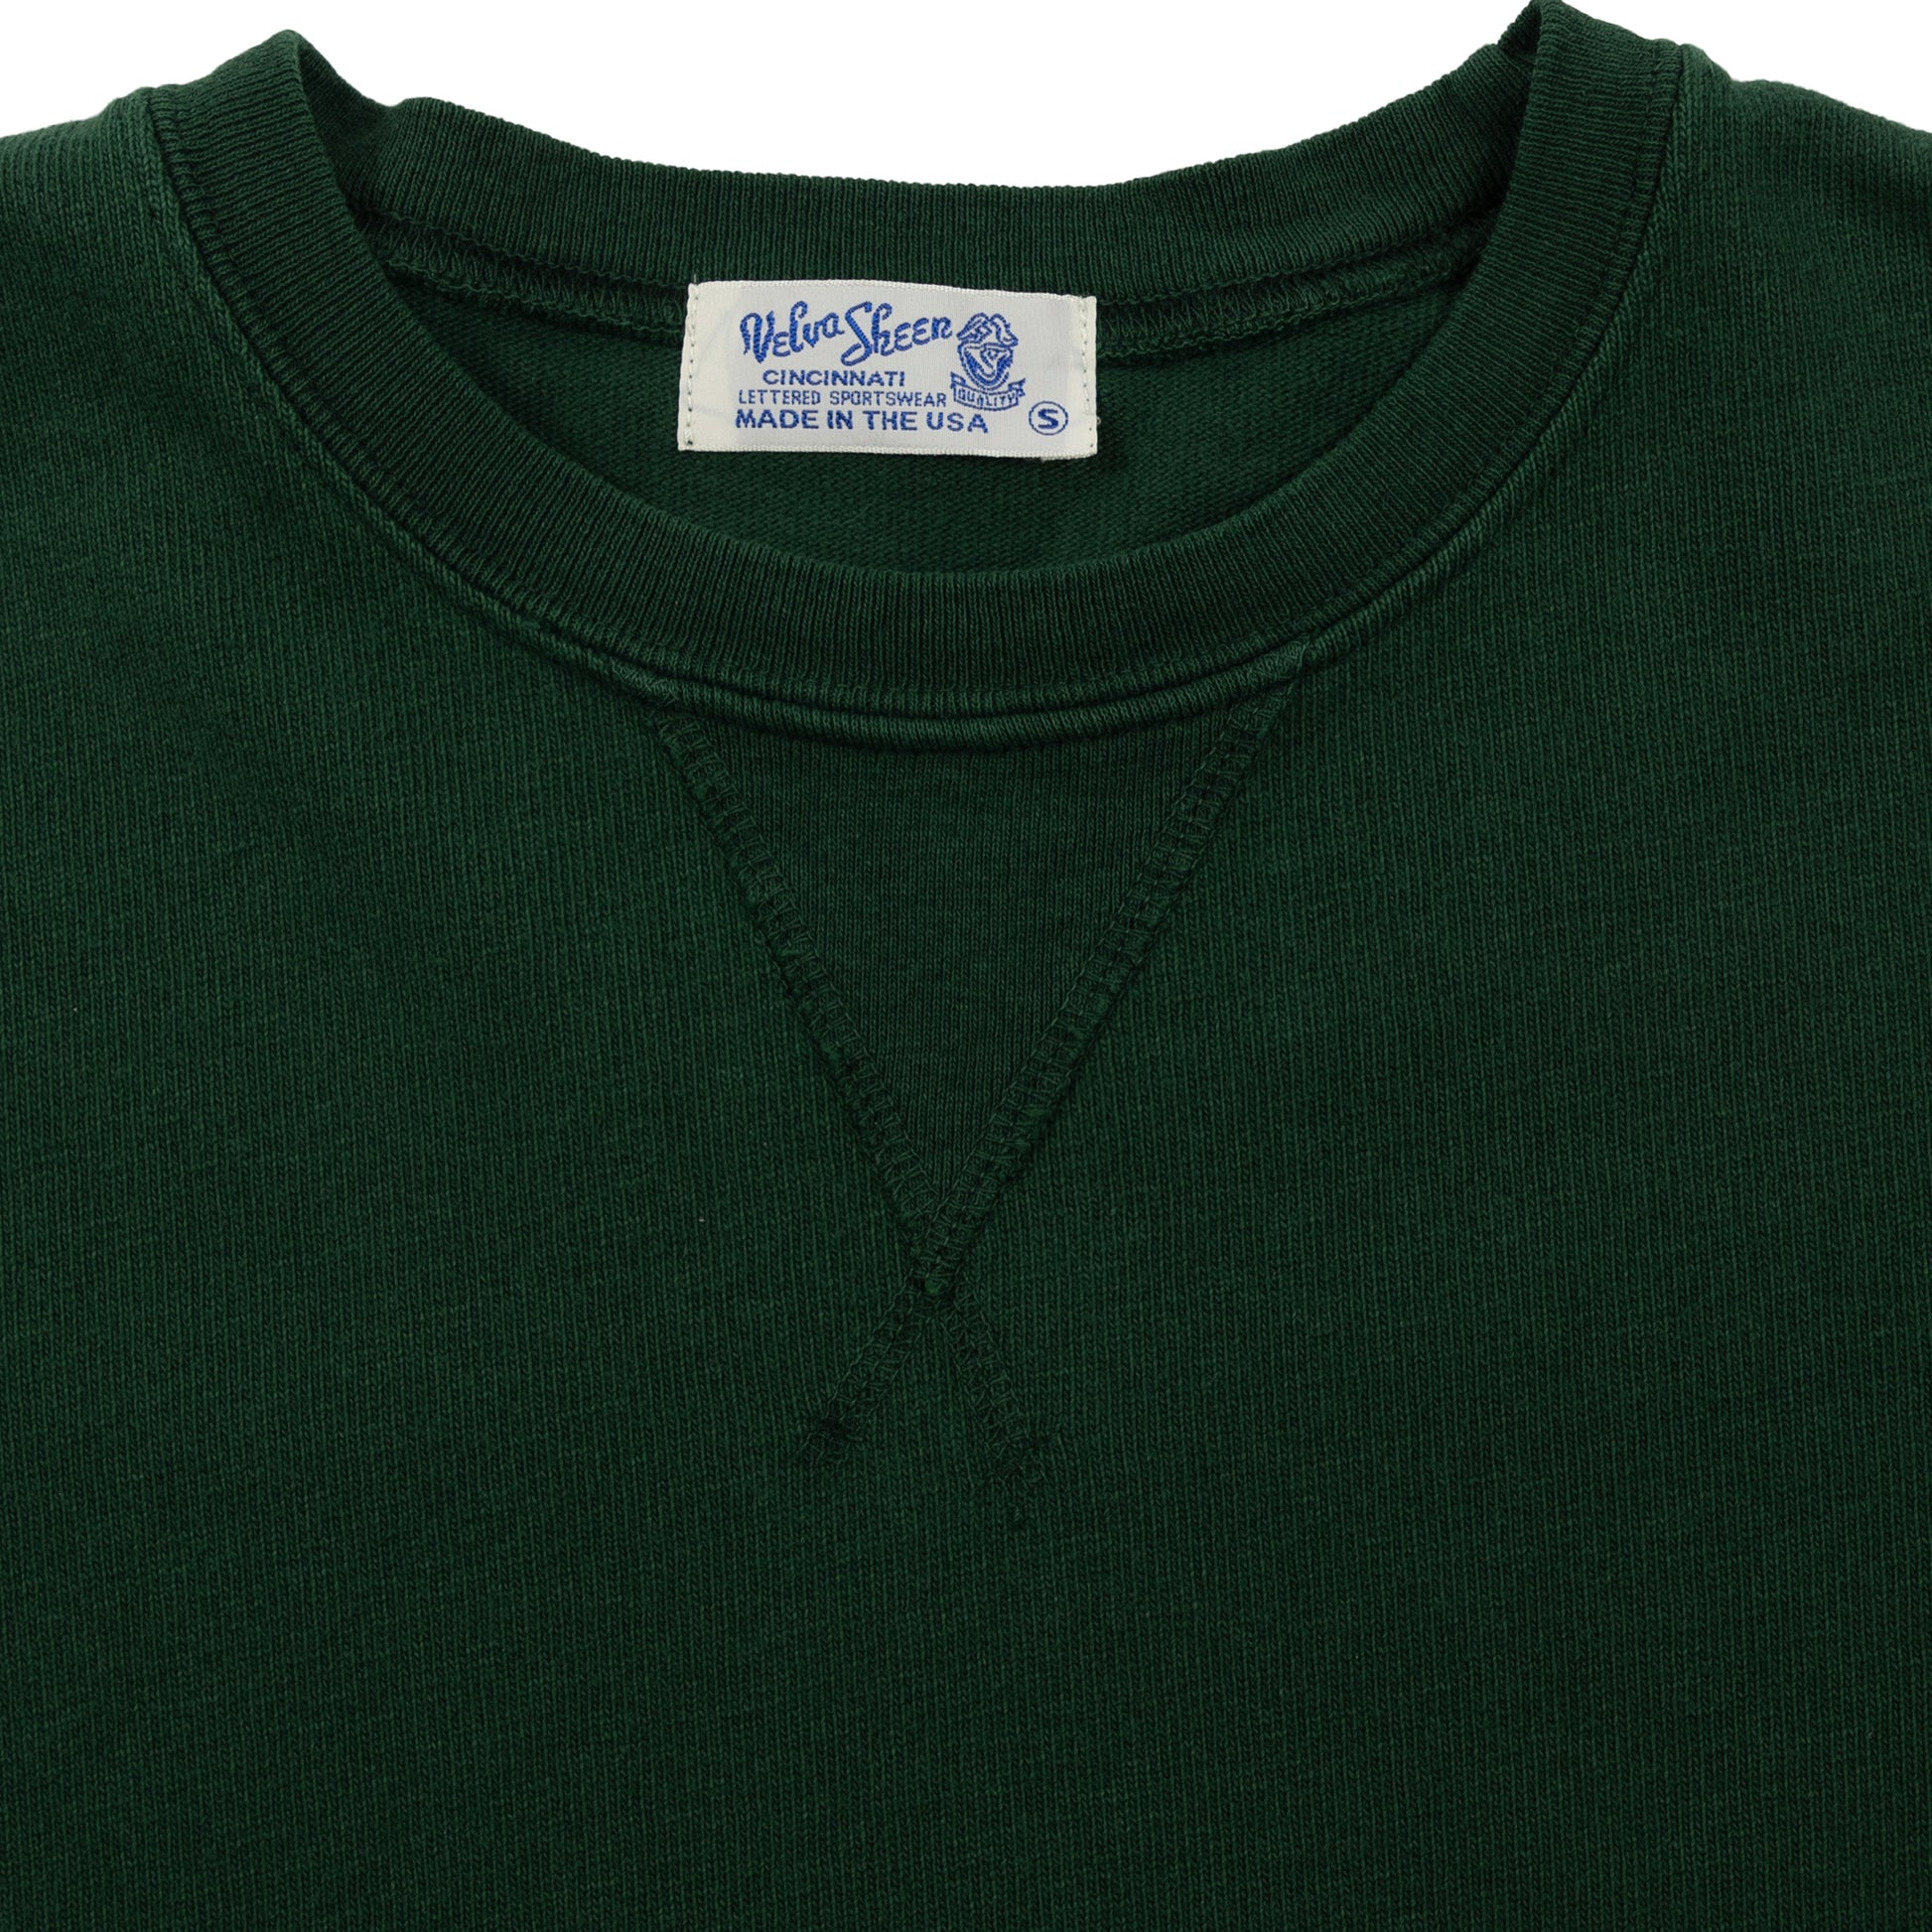 velva sheen heavy pigment crewneck sweatshirt green sweater collar